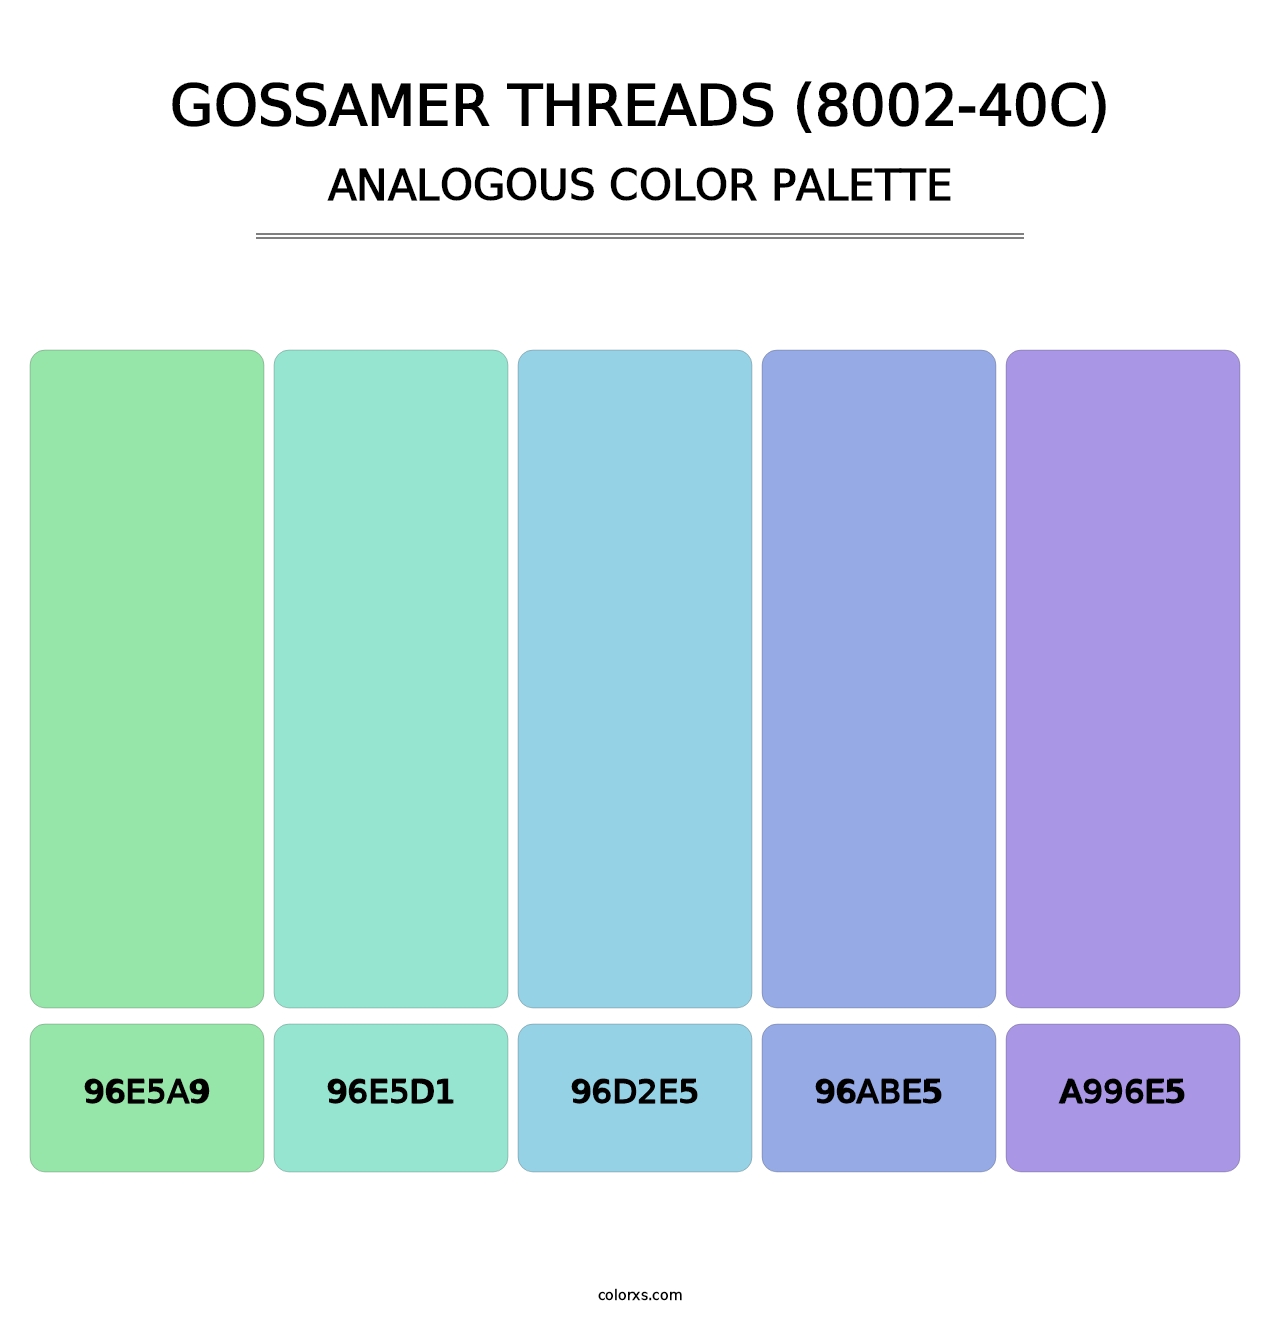 Gossamer Threads (8002-40C) - Analogous Color Palette